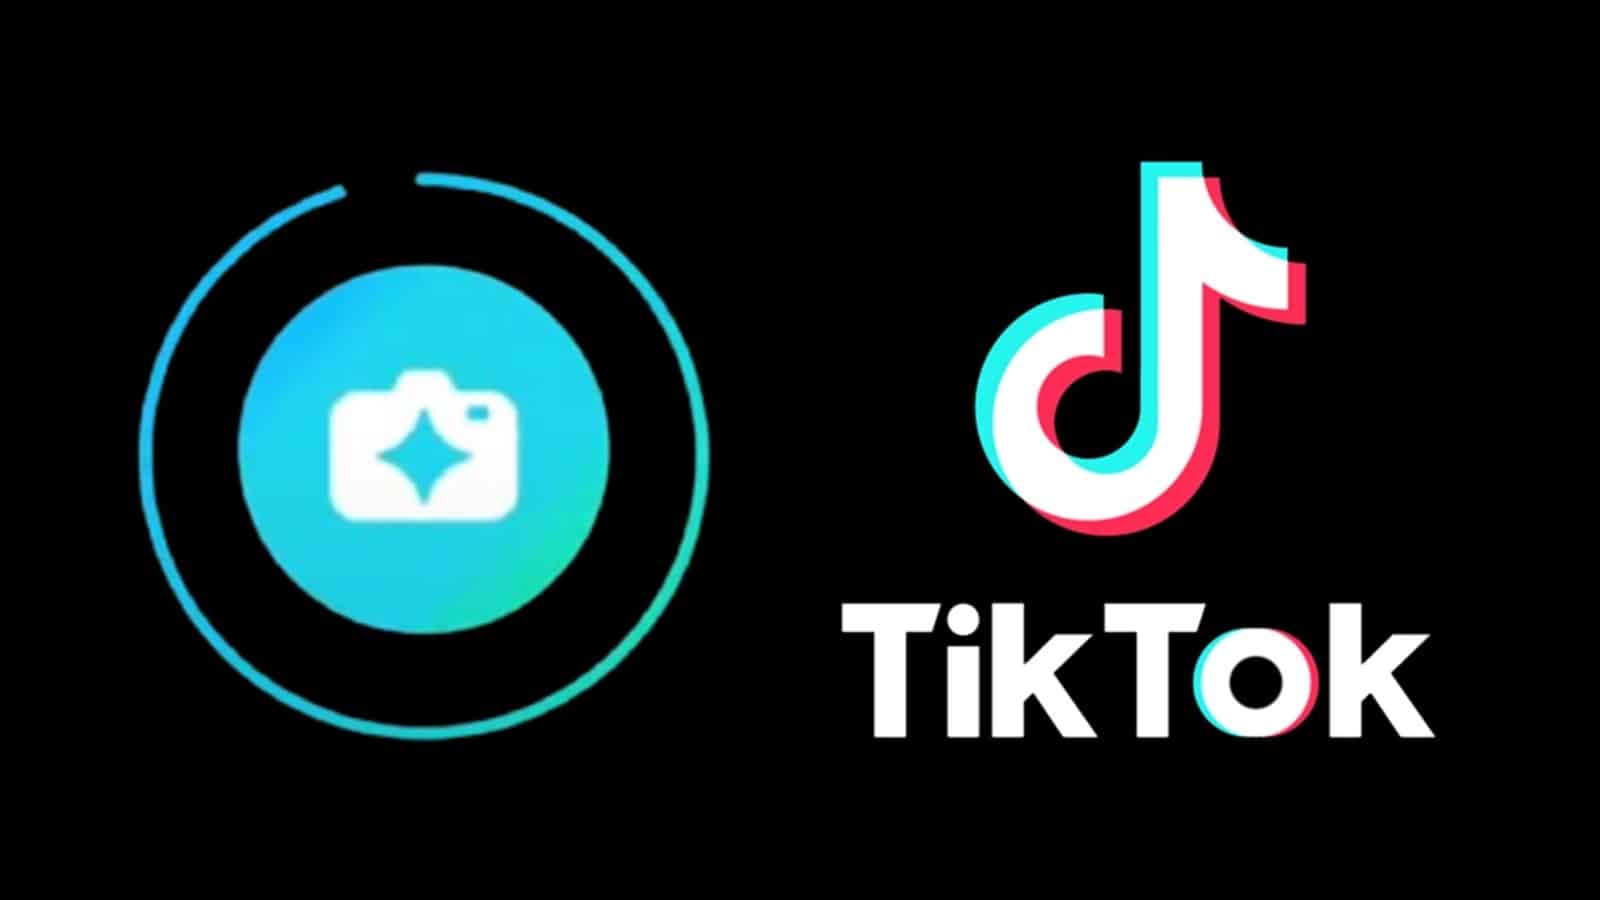 TikTok Stories logo next to TikTok logo